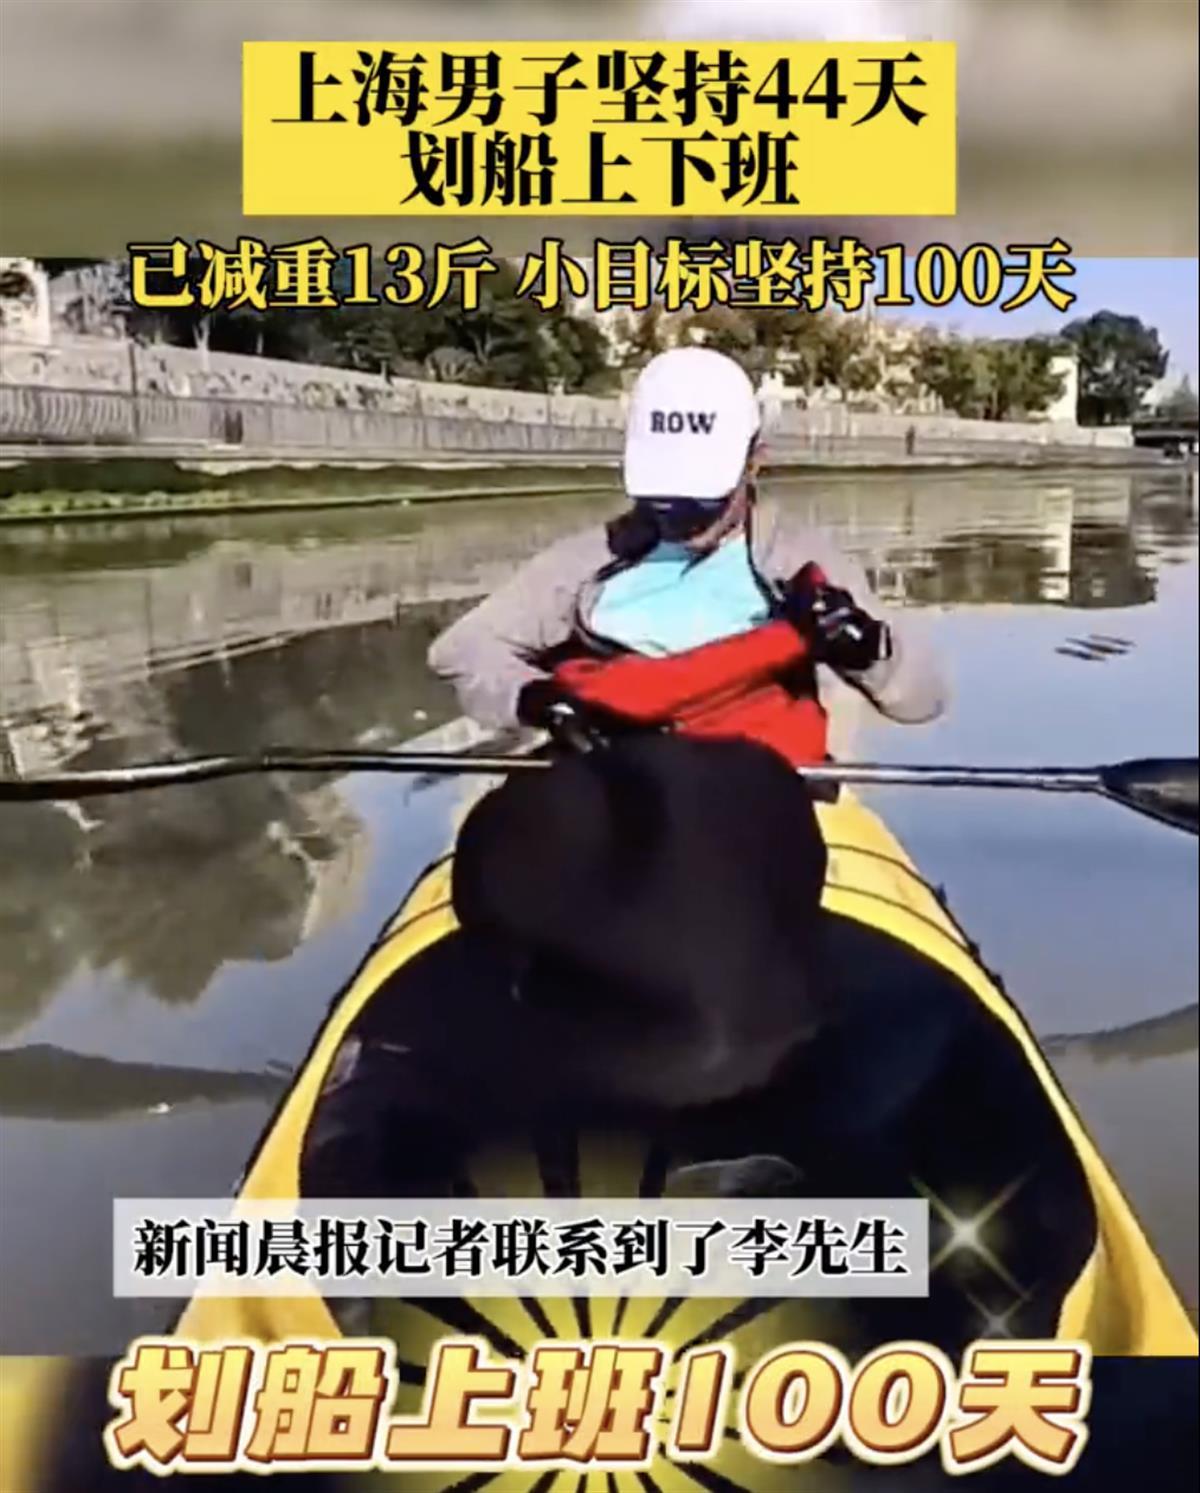 上海一男子耗时75分钟划船上下班，开车只需10多分钟真相还有哪些？
